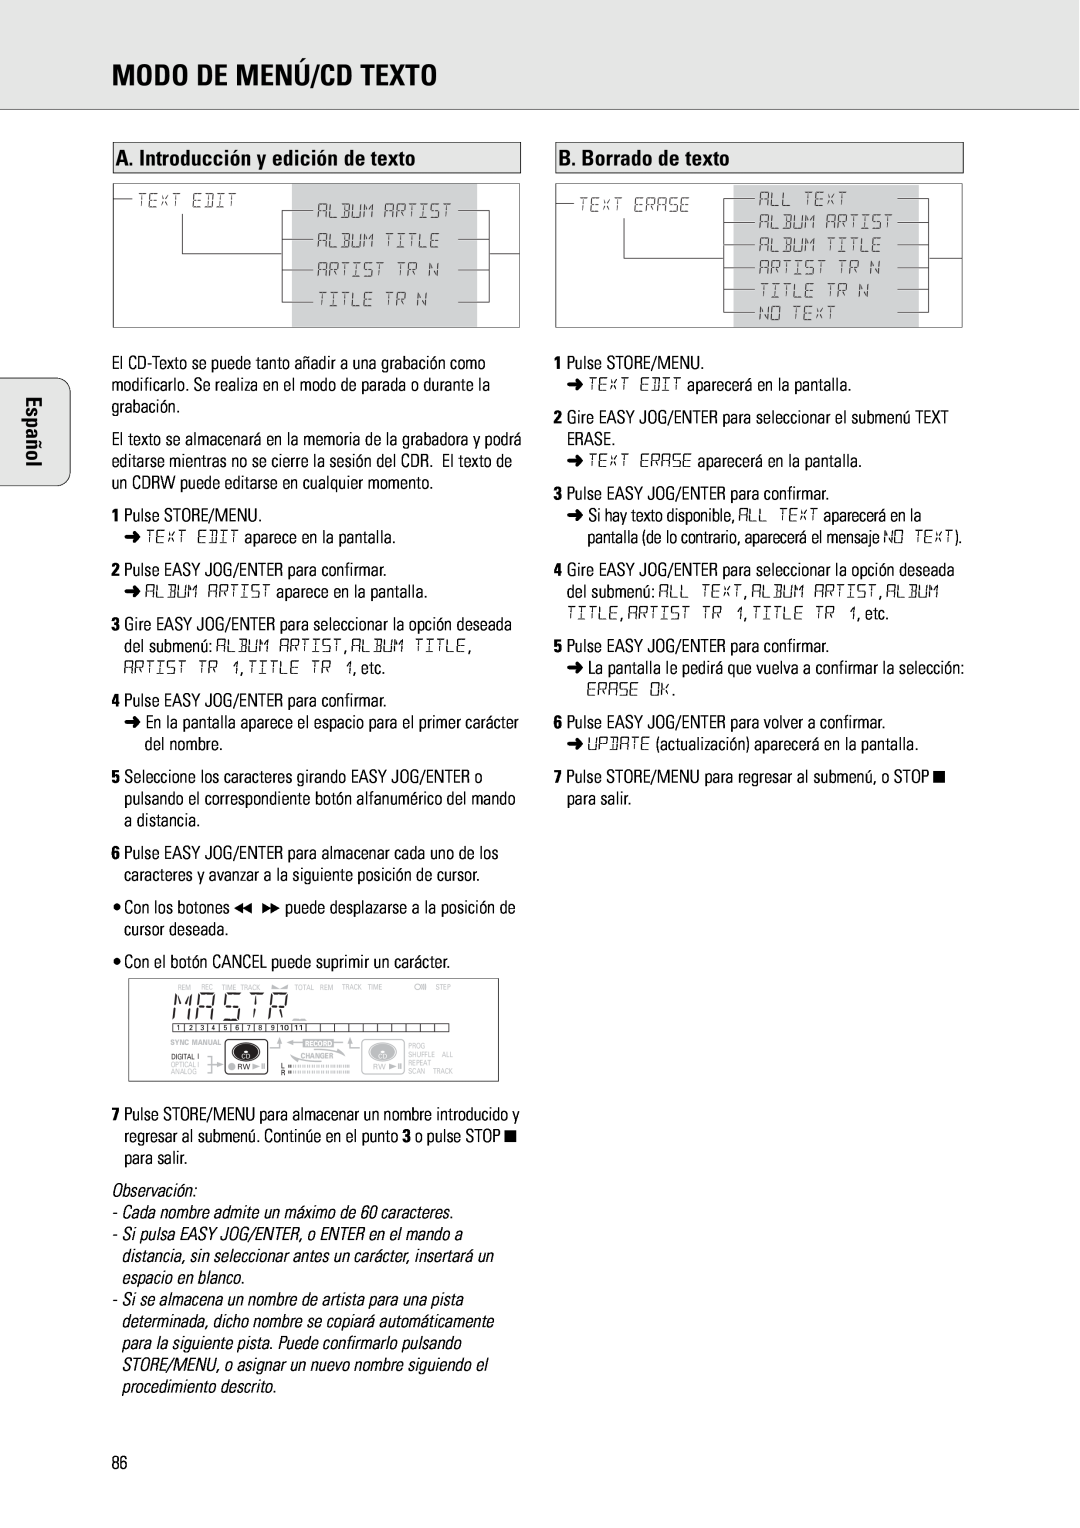 Philips CDR775 Modo De Menú/Cd Texto, A. Introducción y edición de texto, B. Borrado de texto, Title Tr N, Text Erase 